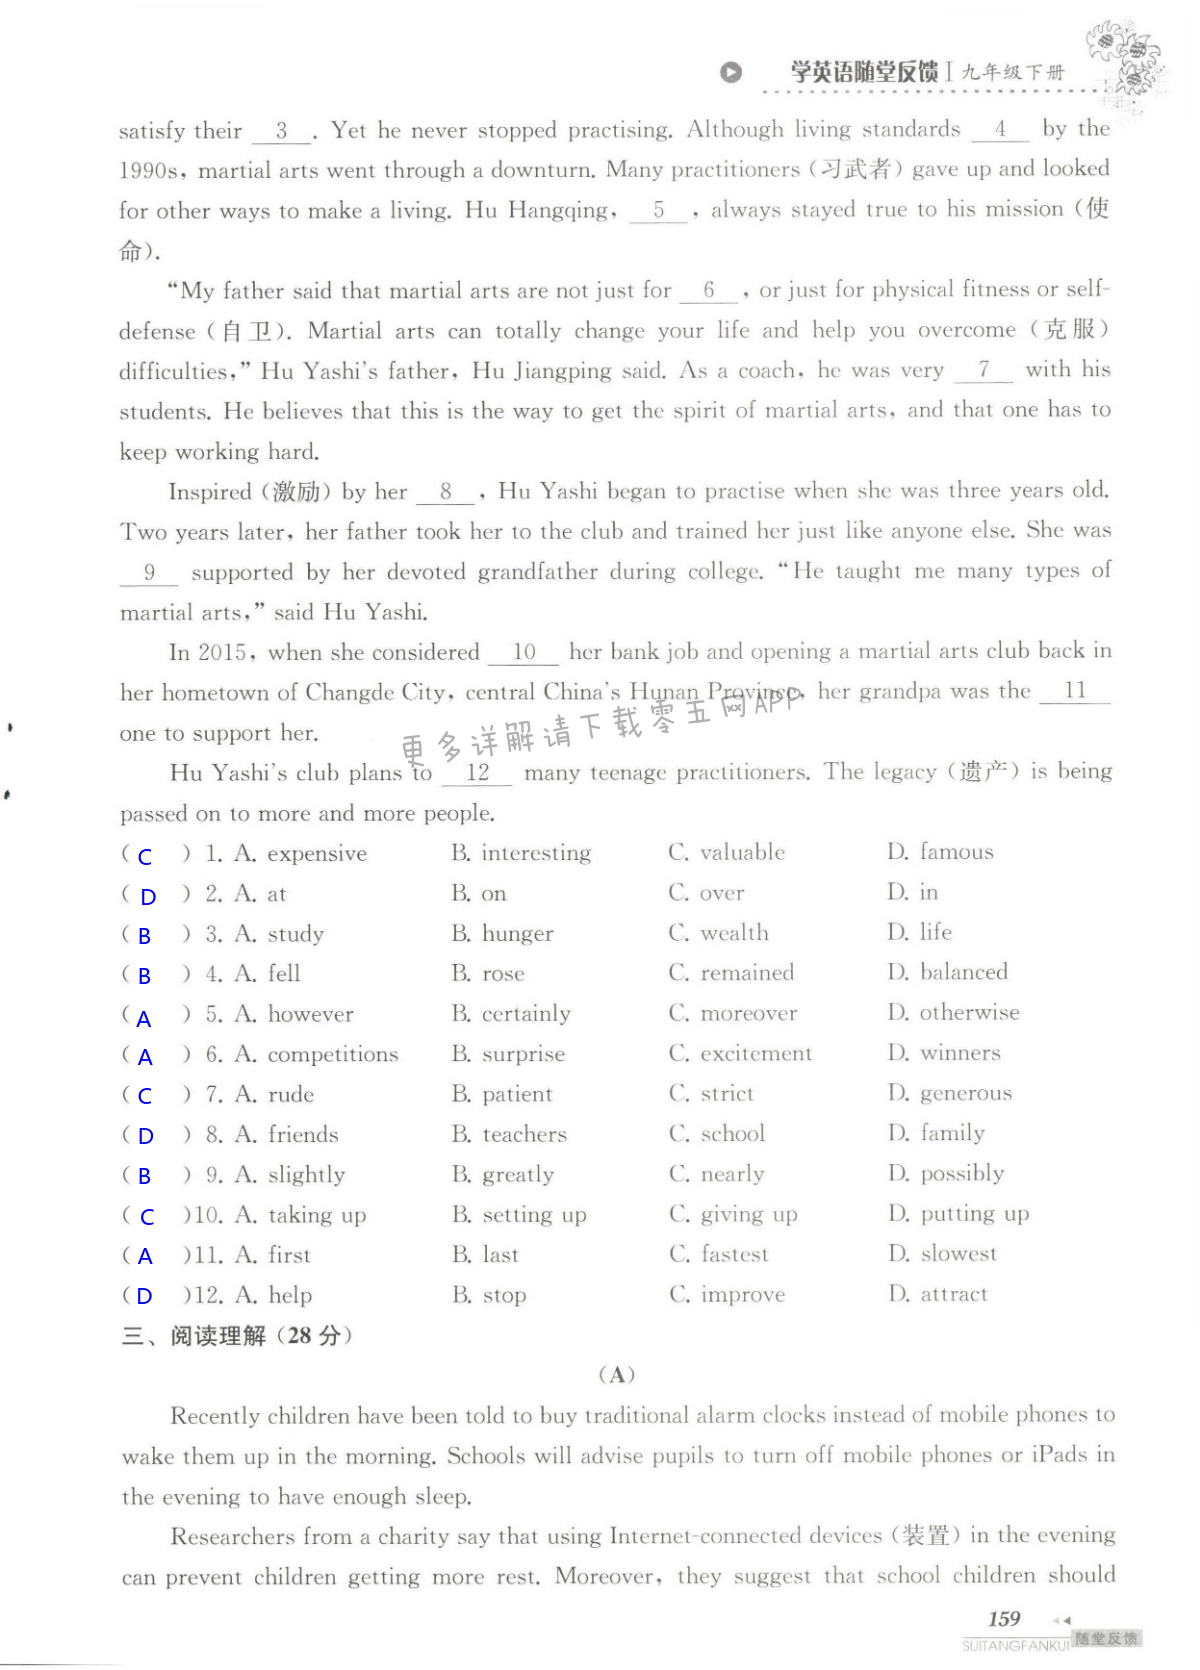 单元综合测试卷 Test for Unit 1 of 9B - 第159页